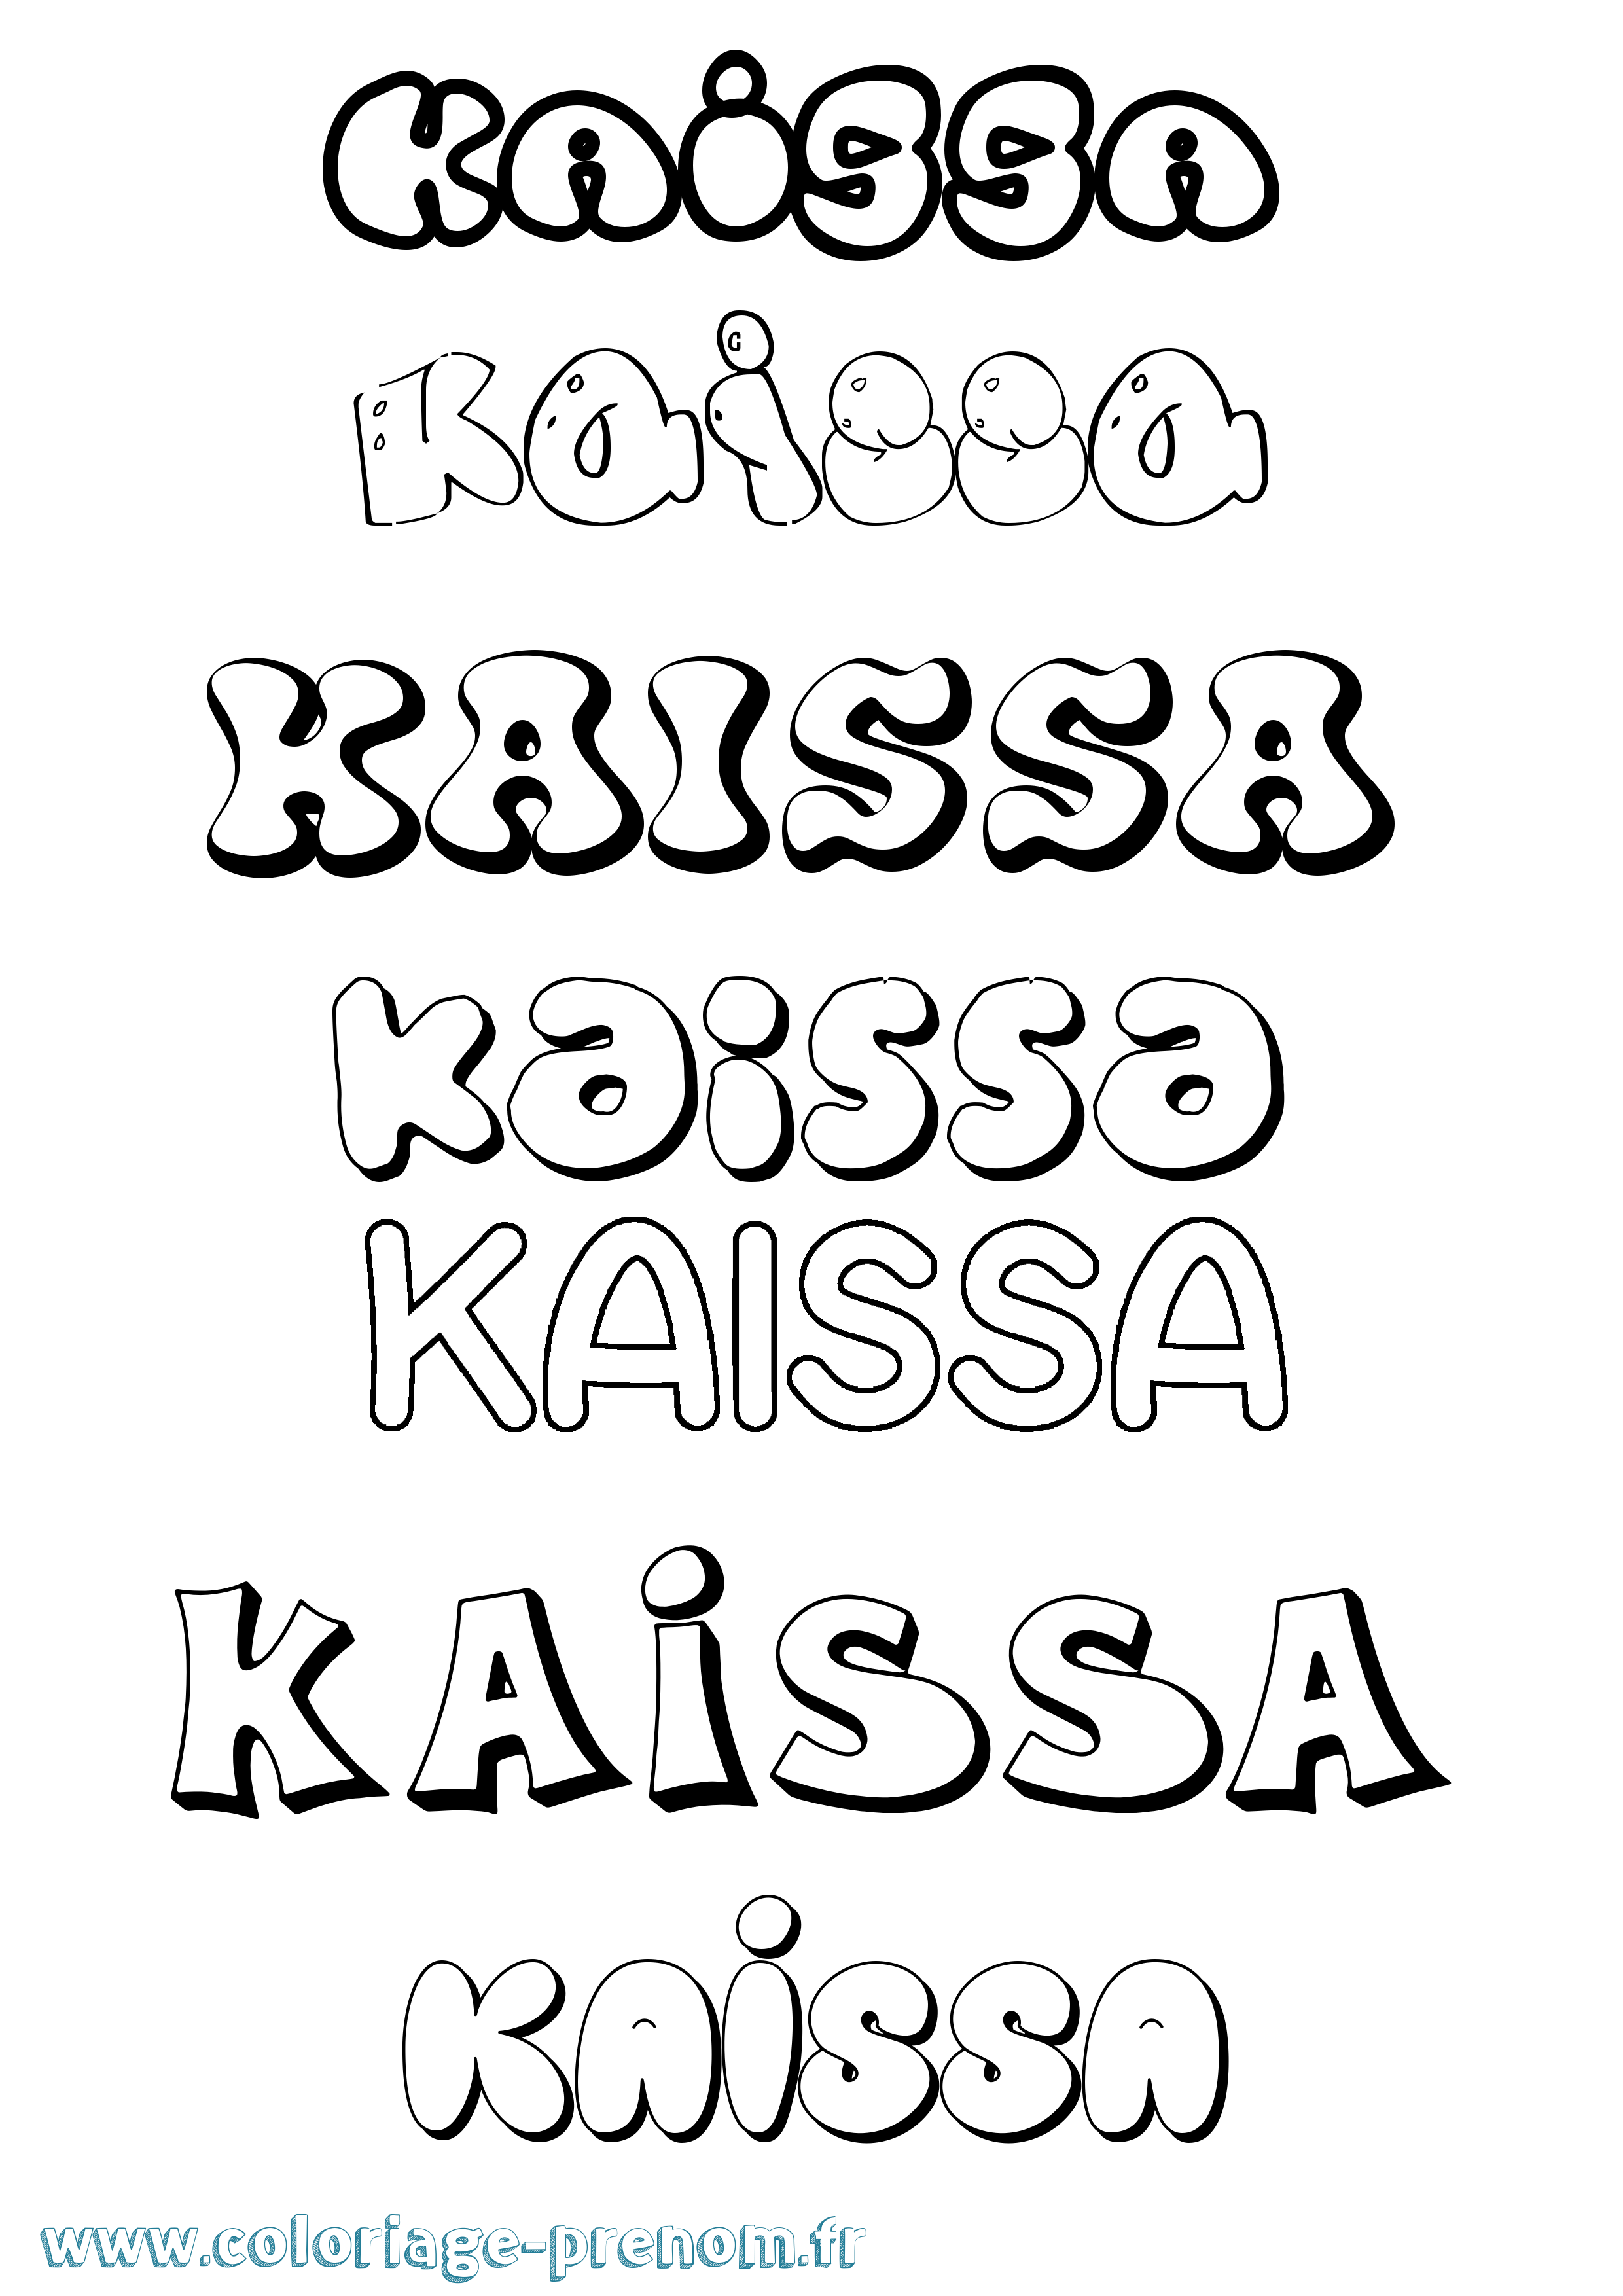 Coloriage prénom Kaissa Bubble